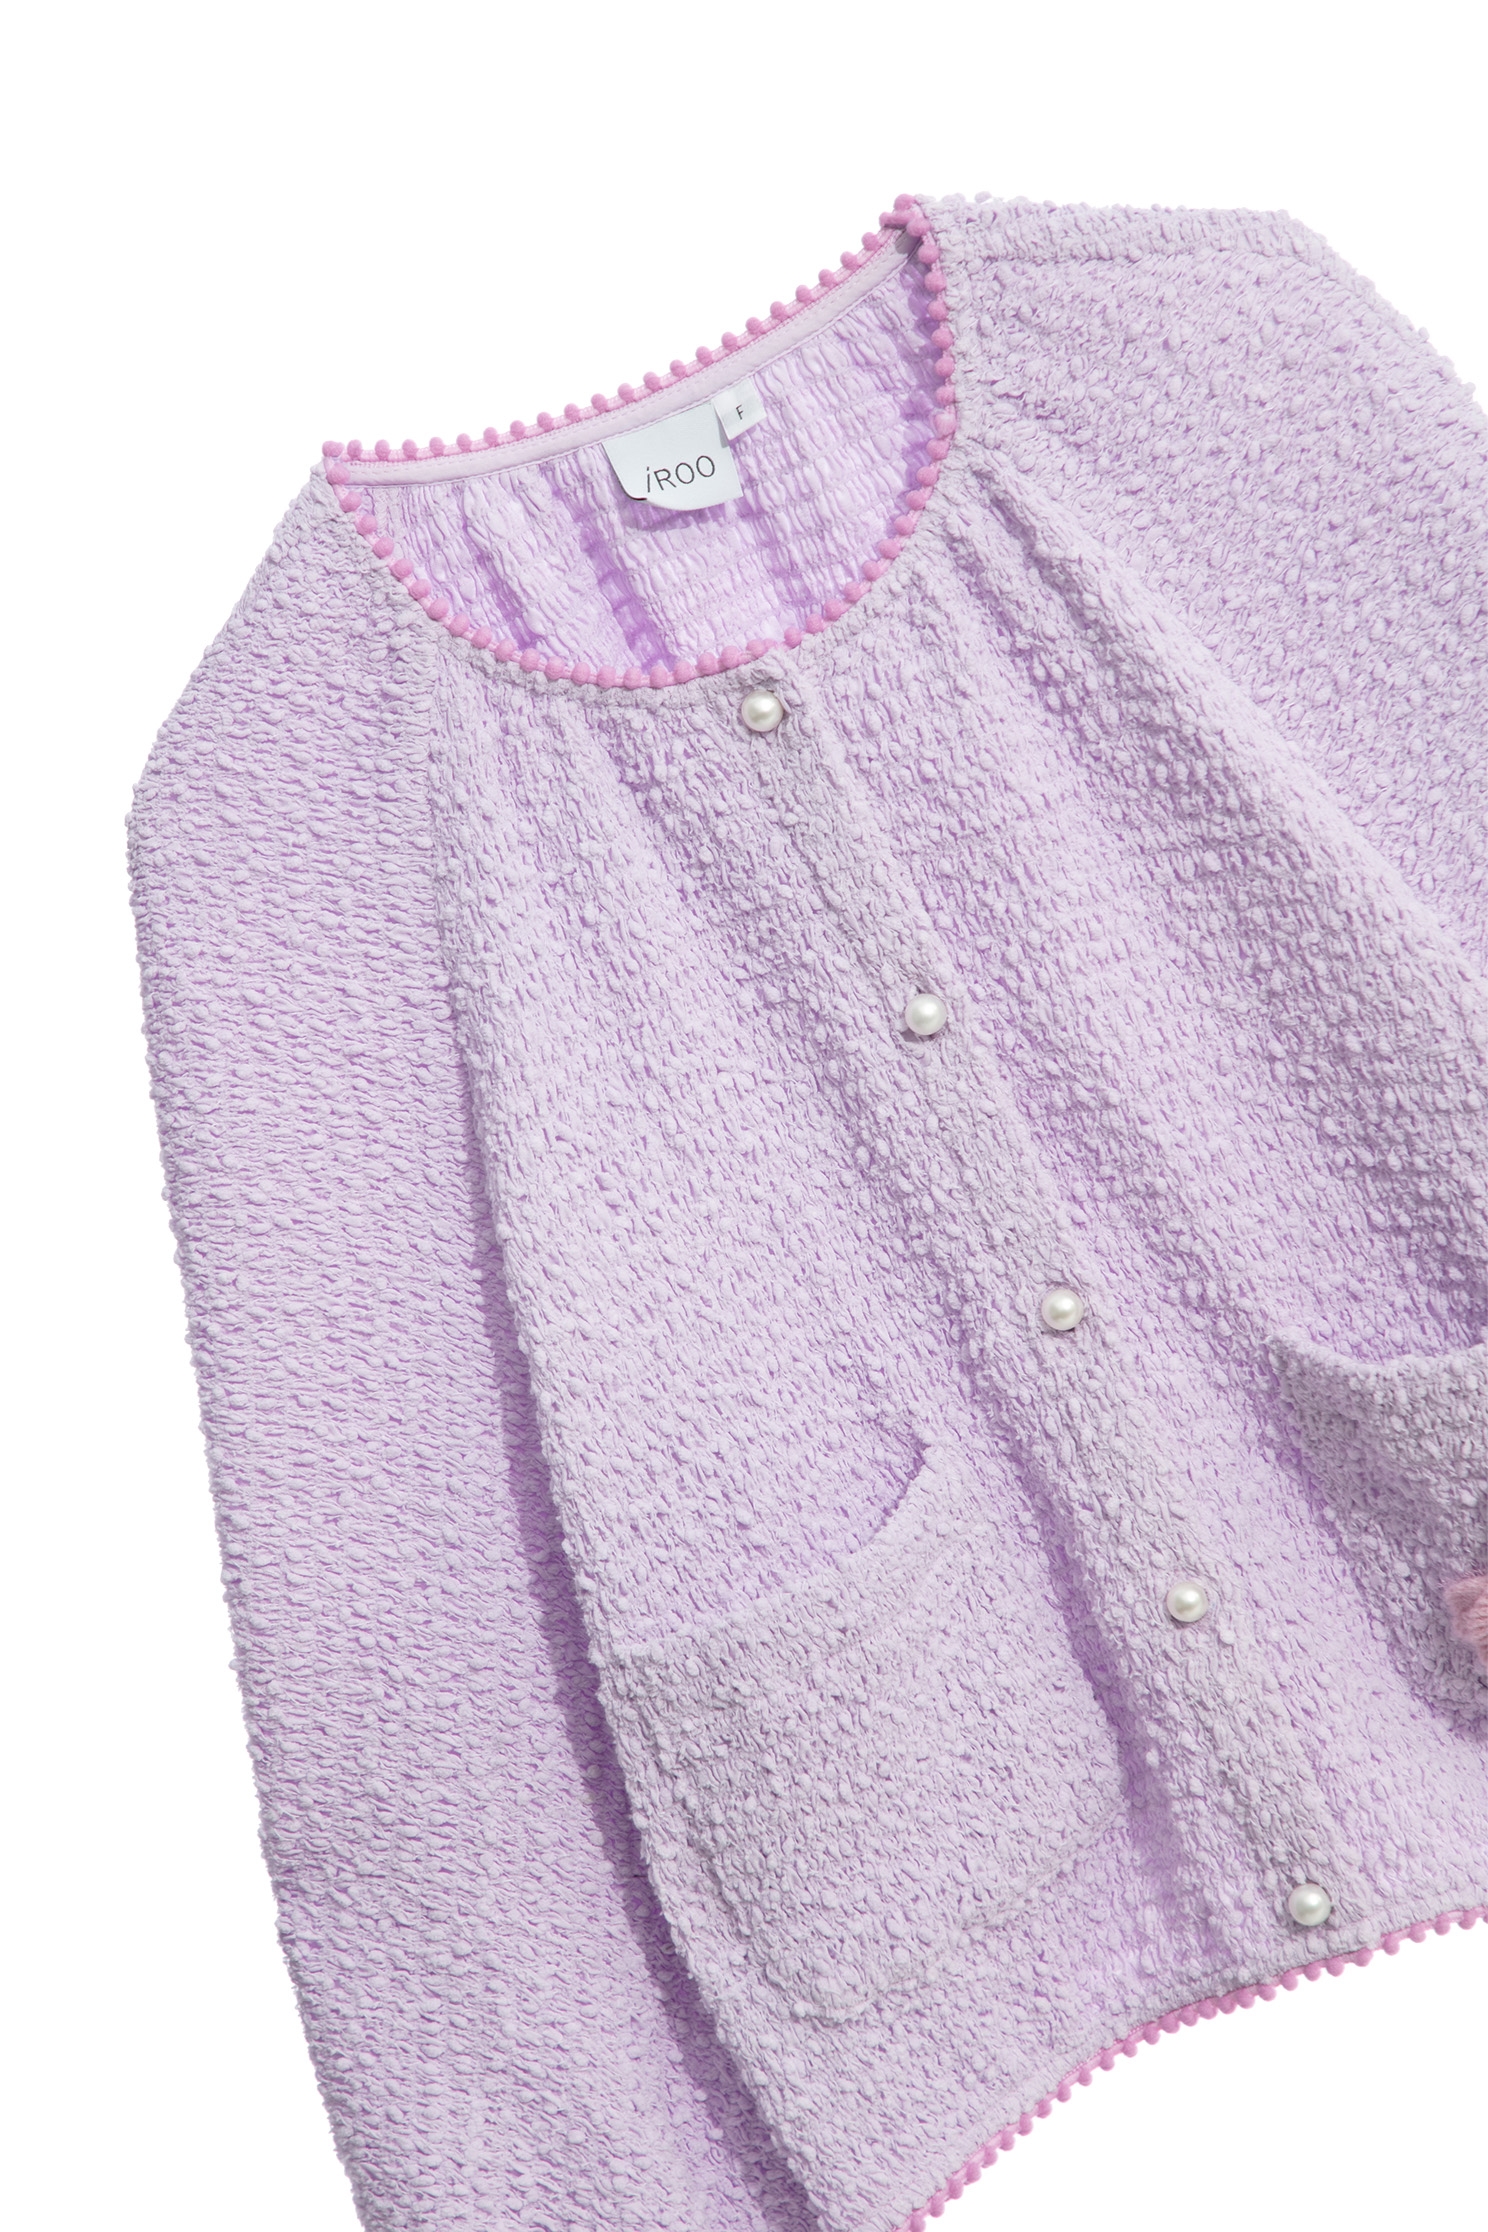 露莓色泡泡紋外套露莓色泡泡紋外套,一般外套,外套,春夏穿搭,時髦成套搭配